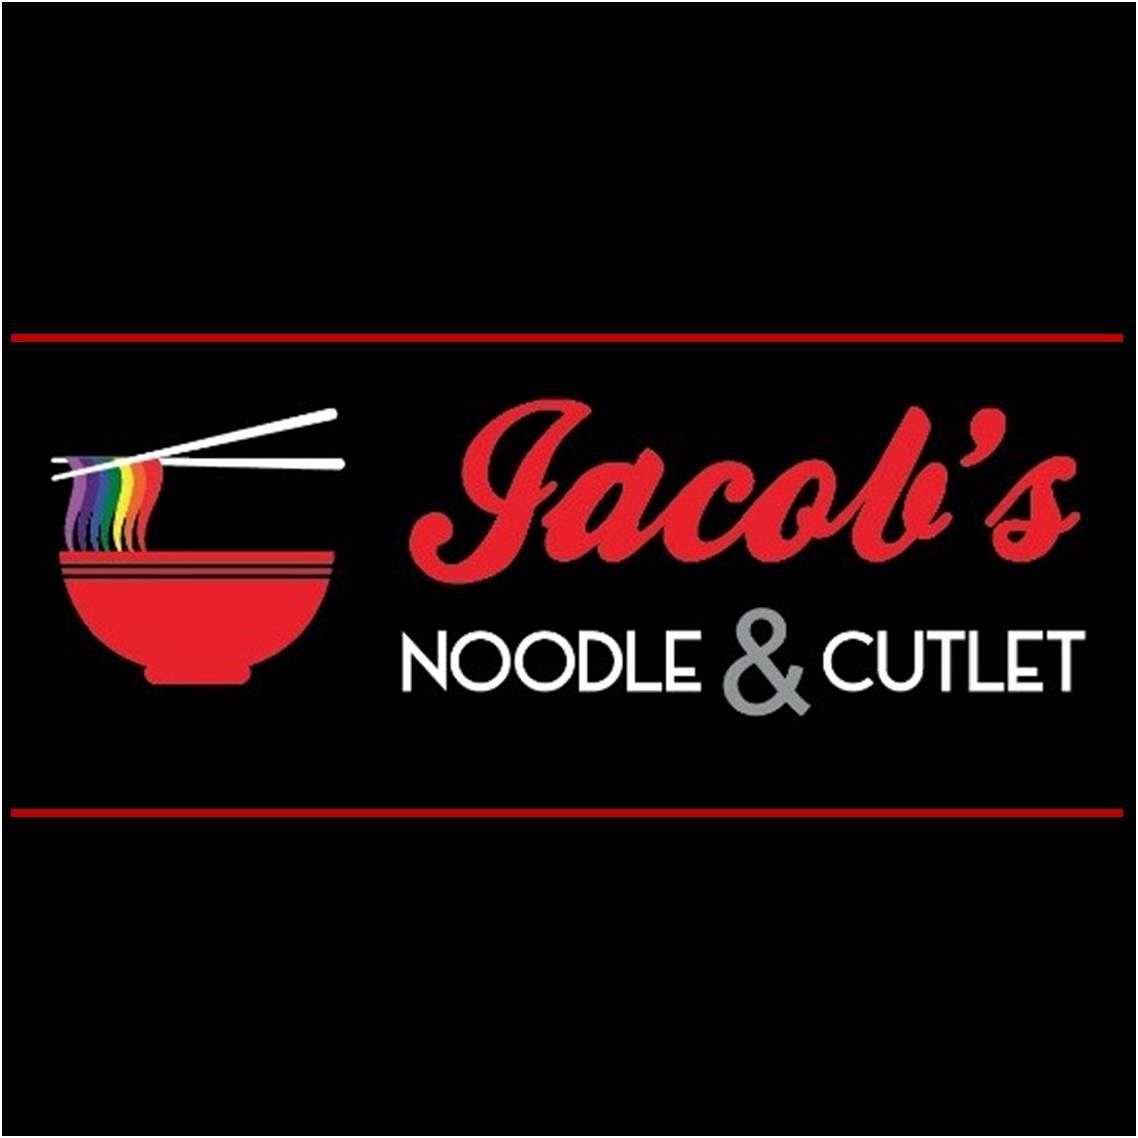 Jacob's Noodle & Cutlet